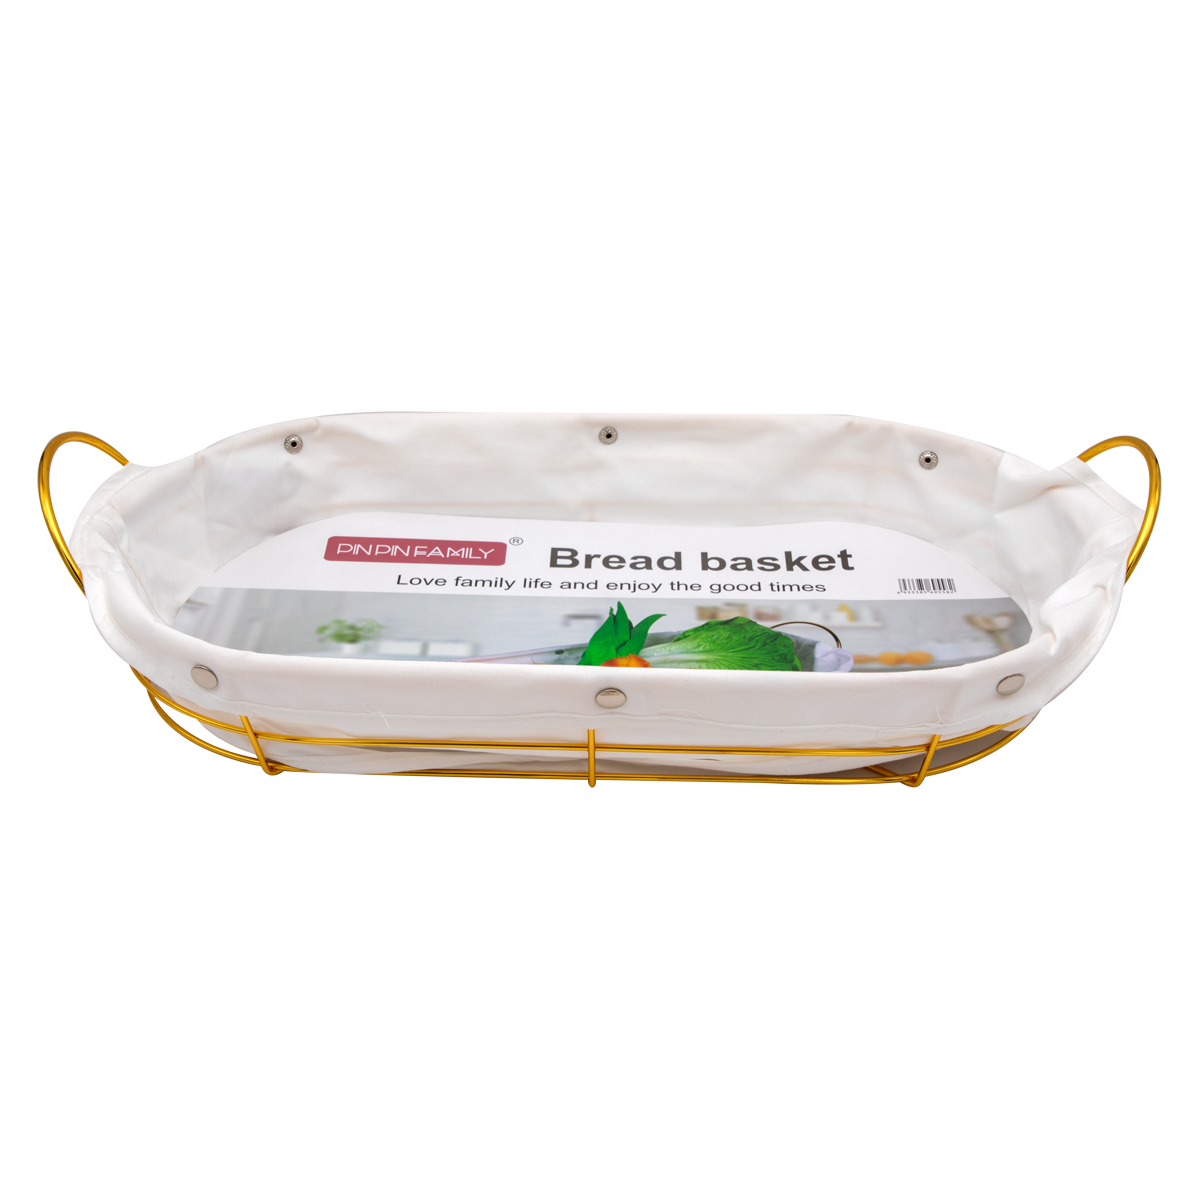 Golden Oval Bread/Vegetable Basket